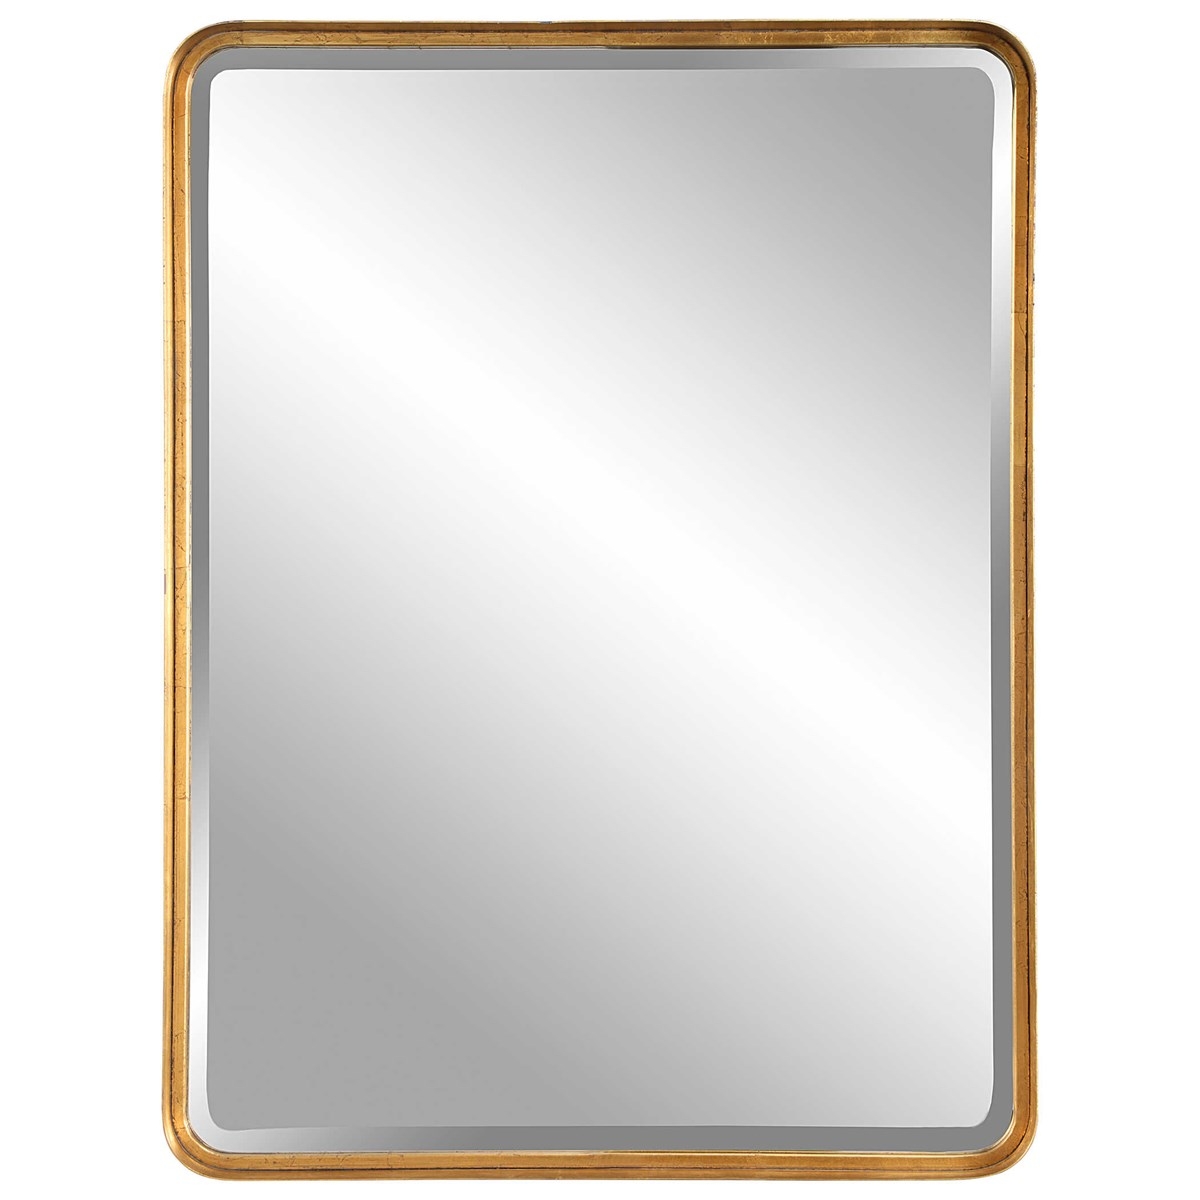 Crofton Mirror, Gold, Large - Image 0